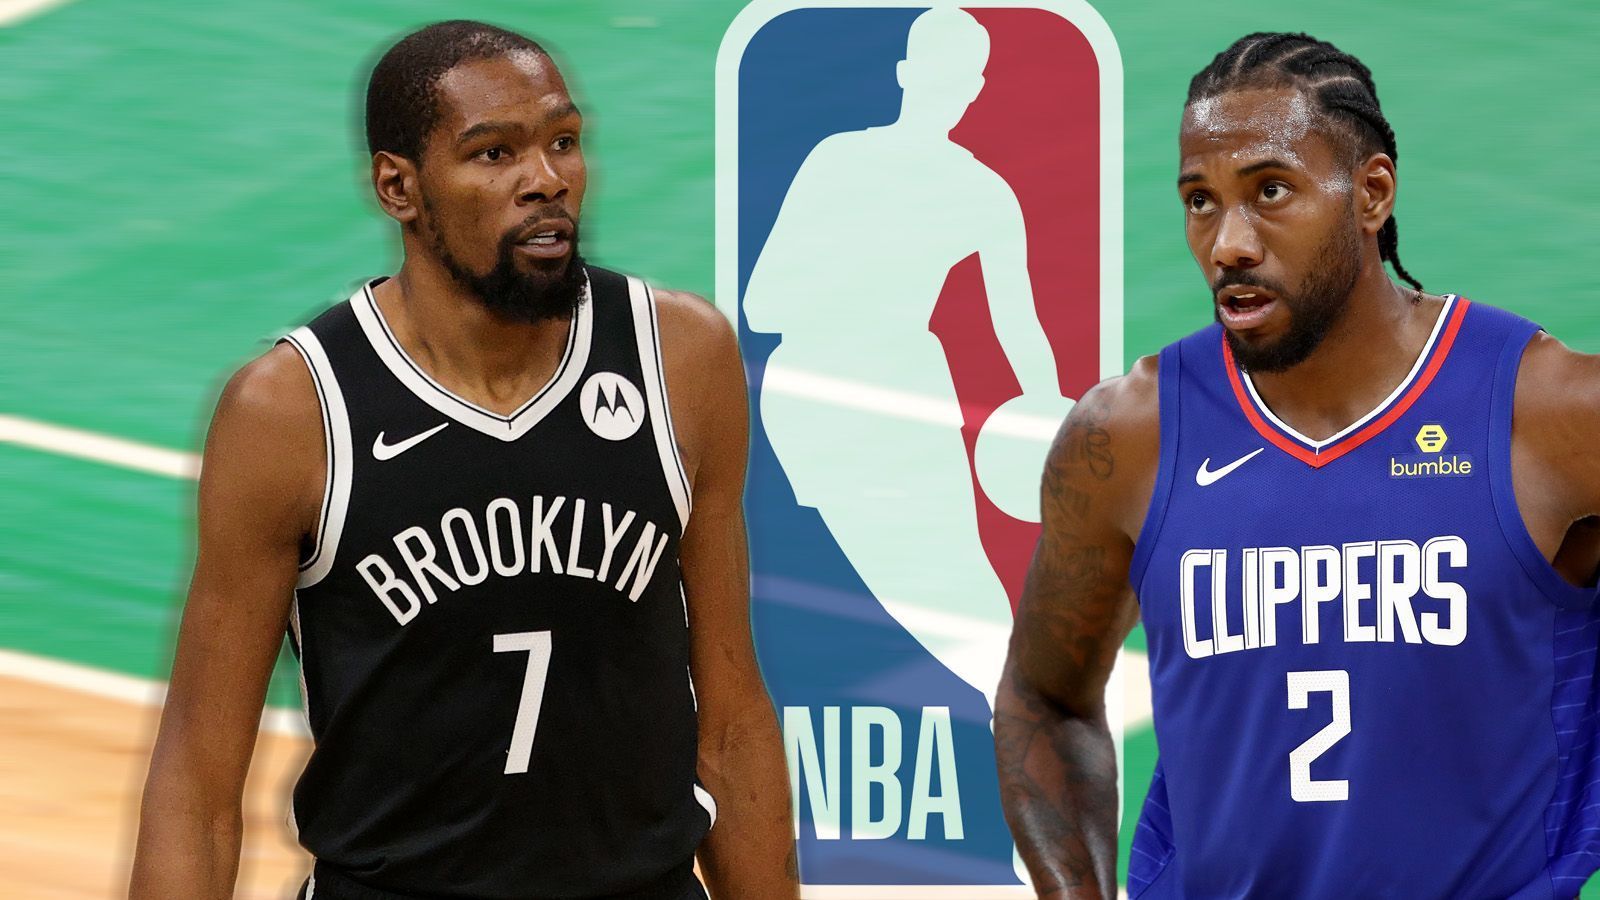 
                <strong>Diese NBA-Stars bekommen neue Verträge</strong><br>
                In der NBA laufen die Verhandlungen über neue Verträge auf Hochtouren. Täglich werden neue Mega-Deals eingefädelt. ran zeigt die Highlights der Free-Agency-Gespräche.
              